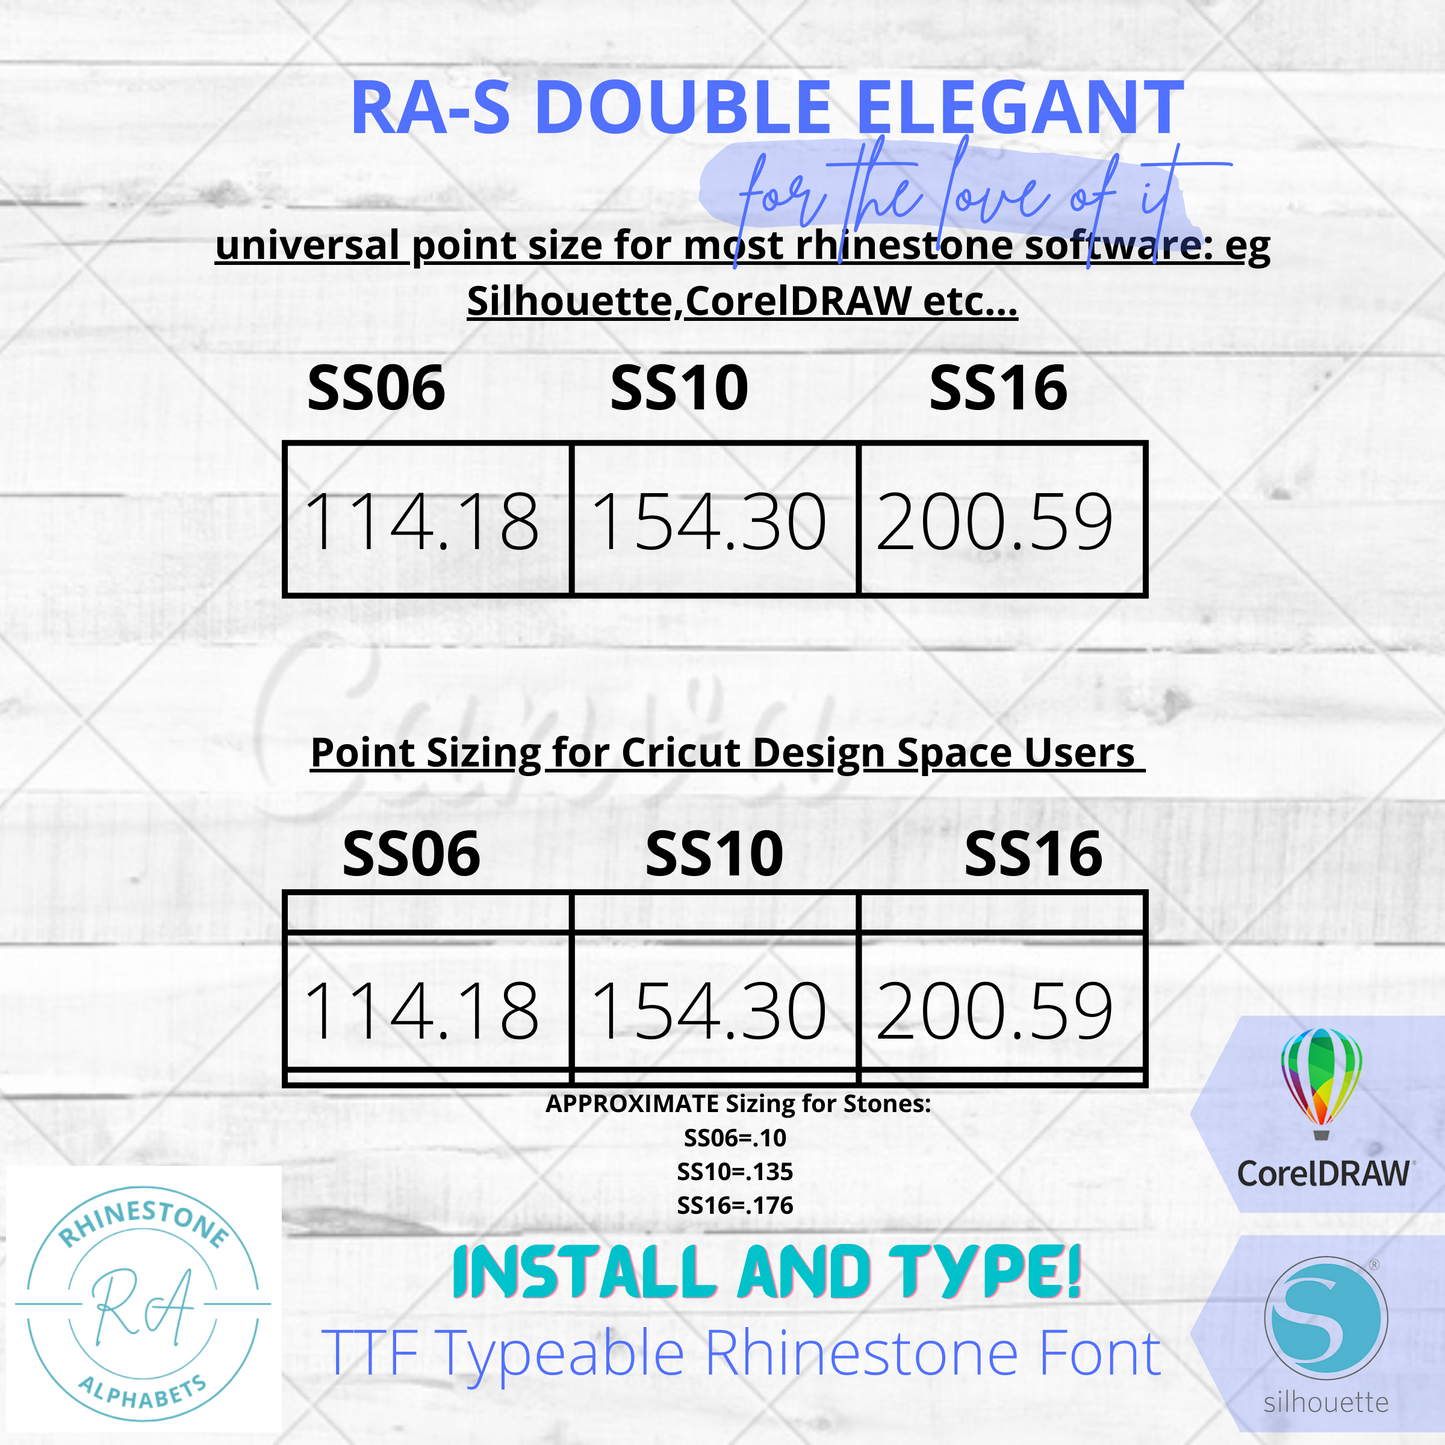 RA-S Double Elegant